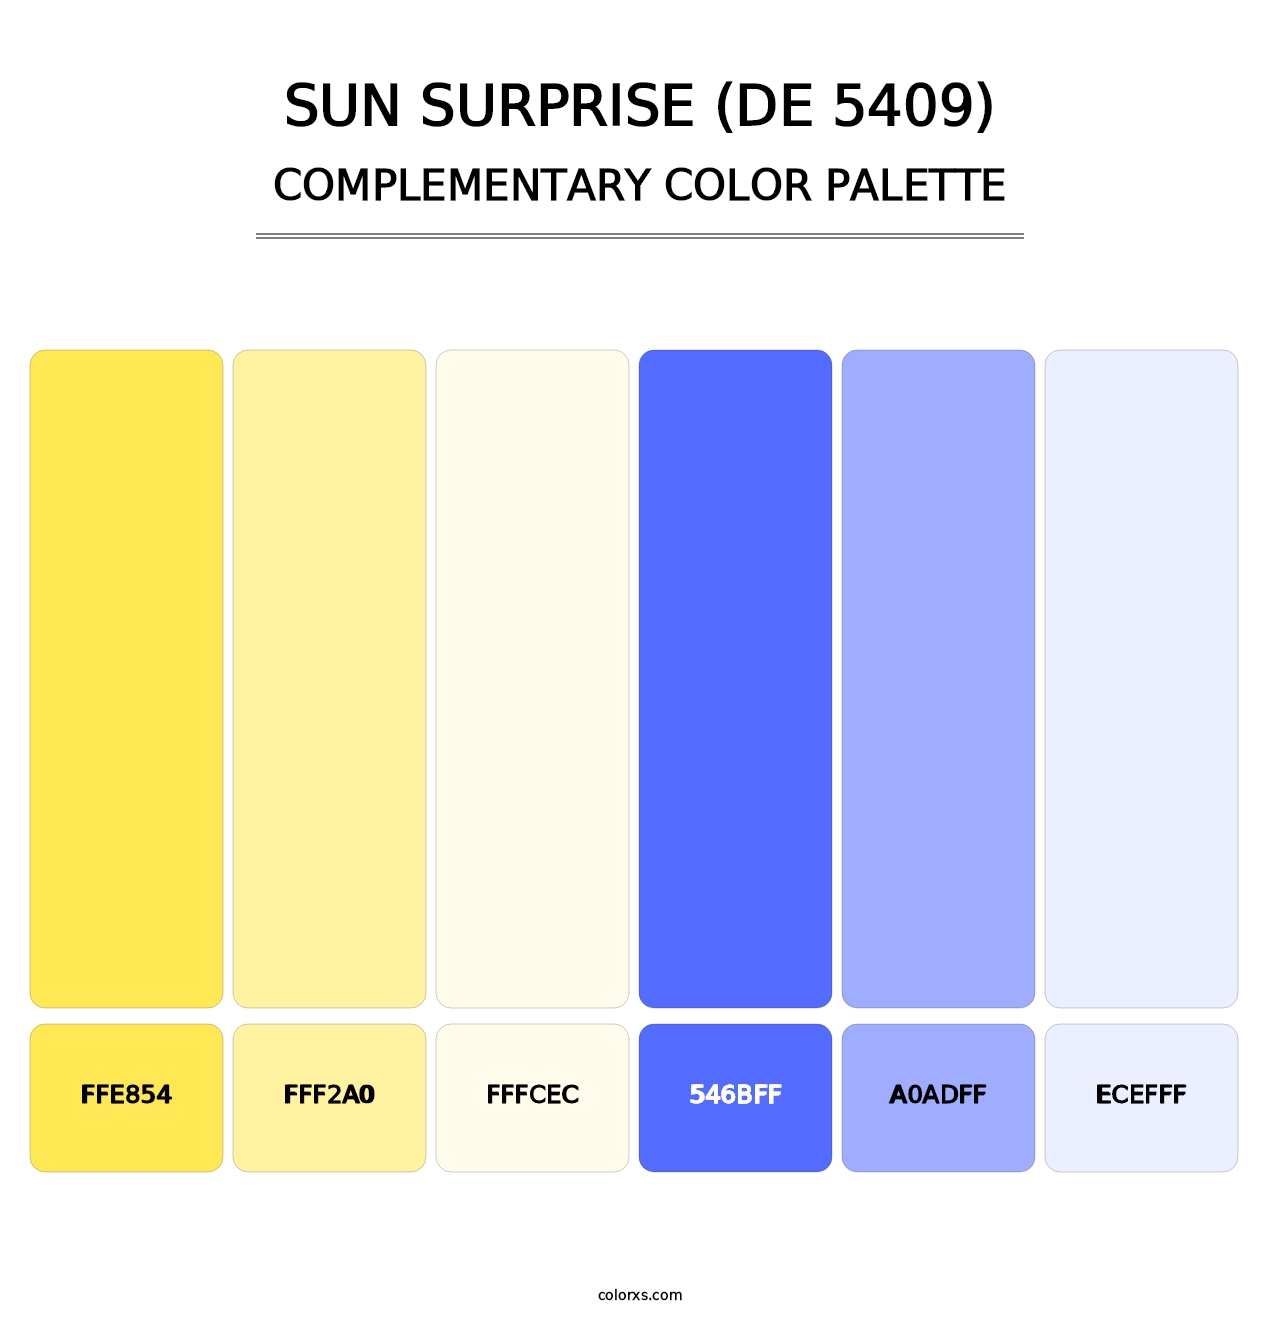 Sun Surprise (DE 5409) - Complementary Color Palette